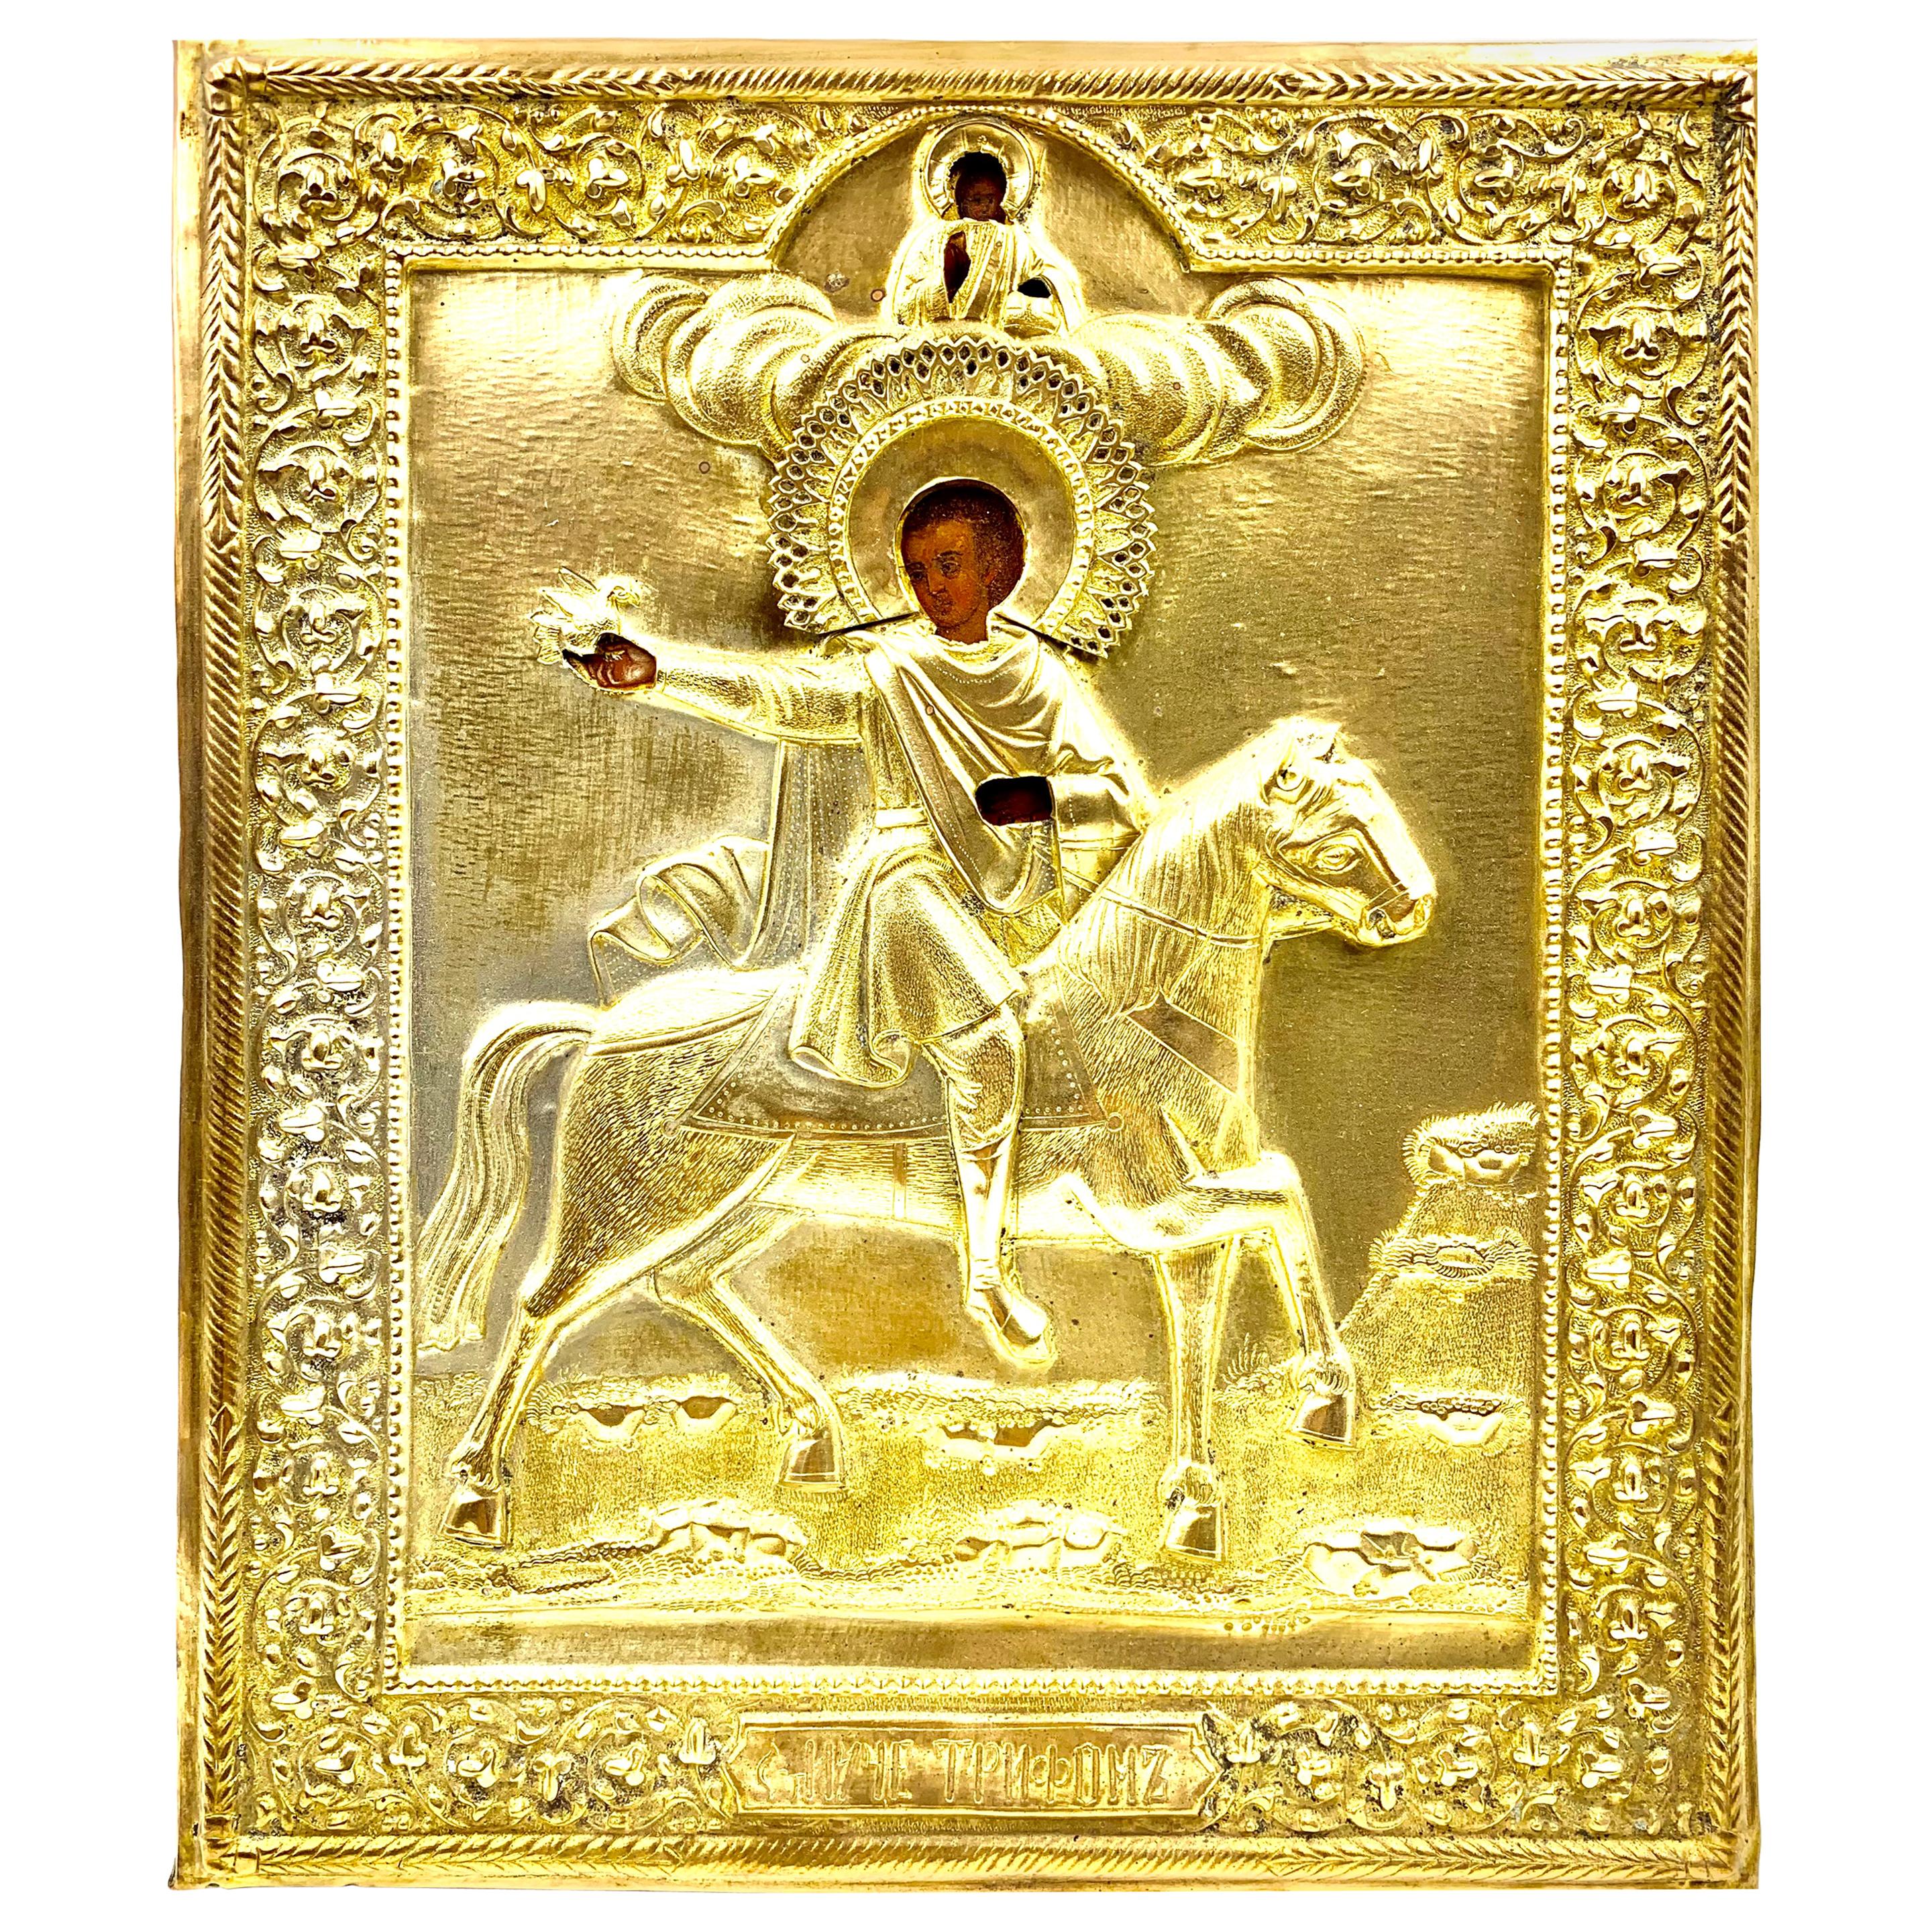 Seltene antike russische Ikone des Heiligen Tryphon, Schutzpatron der Weinkelche, Falconers